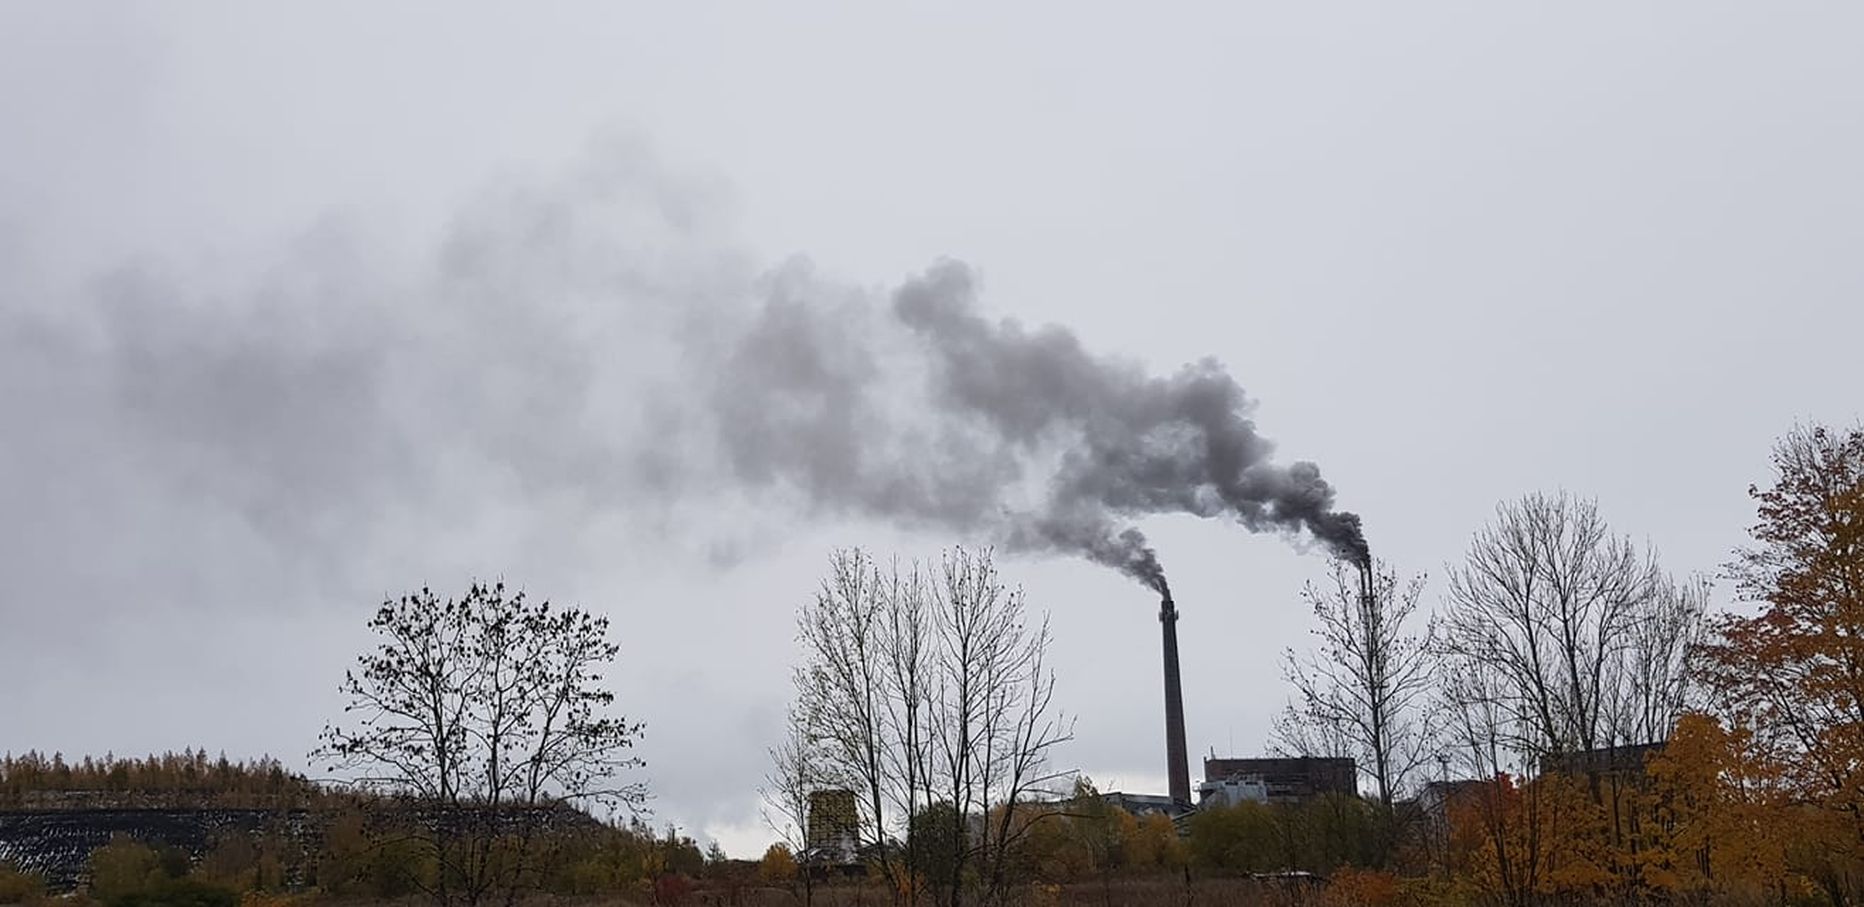 Хотя жители Кивиыли жалуются на выброс сажи из труб химпредприятия, данные о выбросах его почему-то не показывают.